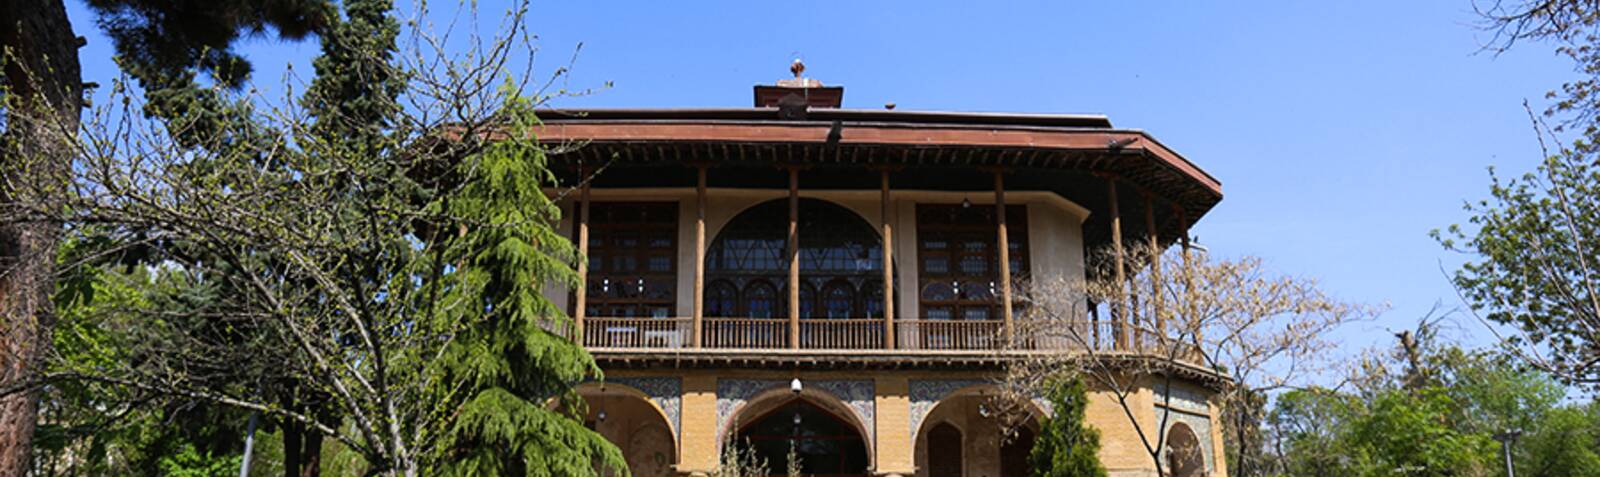 قصر جهلستون في قزوین